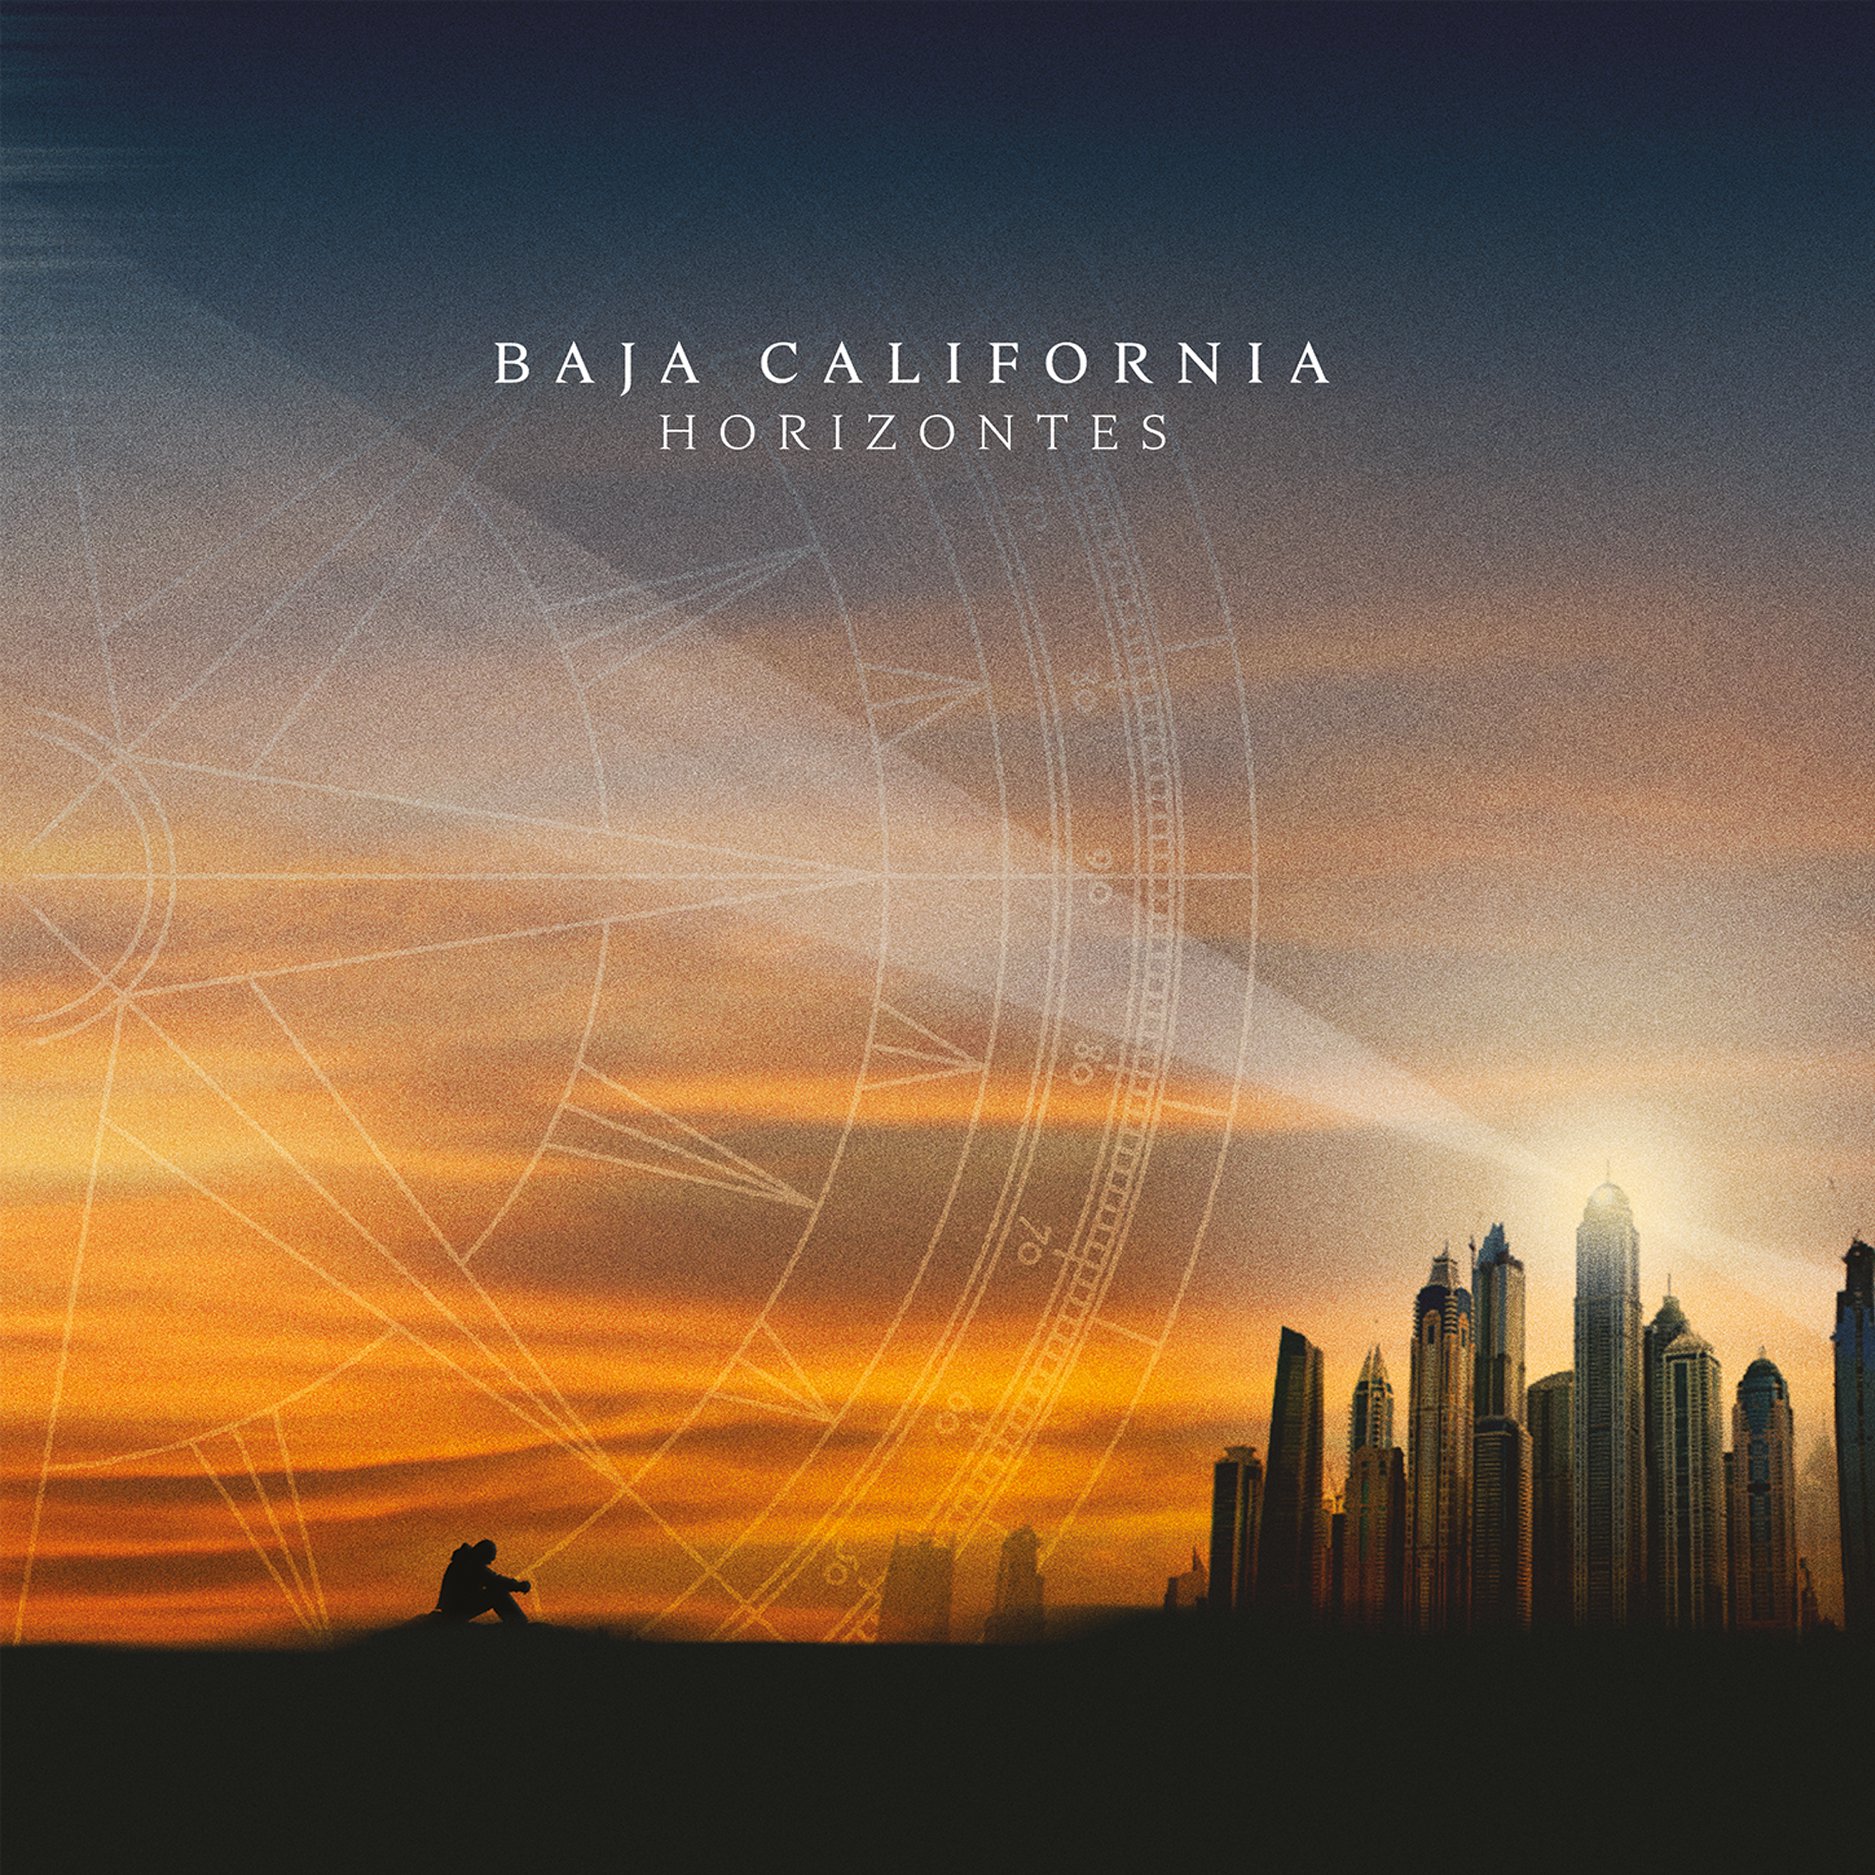 BAJA CALIFORNIA presentan el vídeo lyric del tema “Blanco y Negro” adelanto de su próximo disco